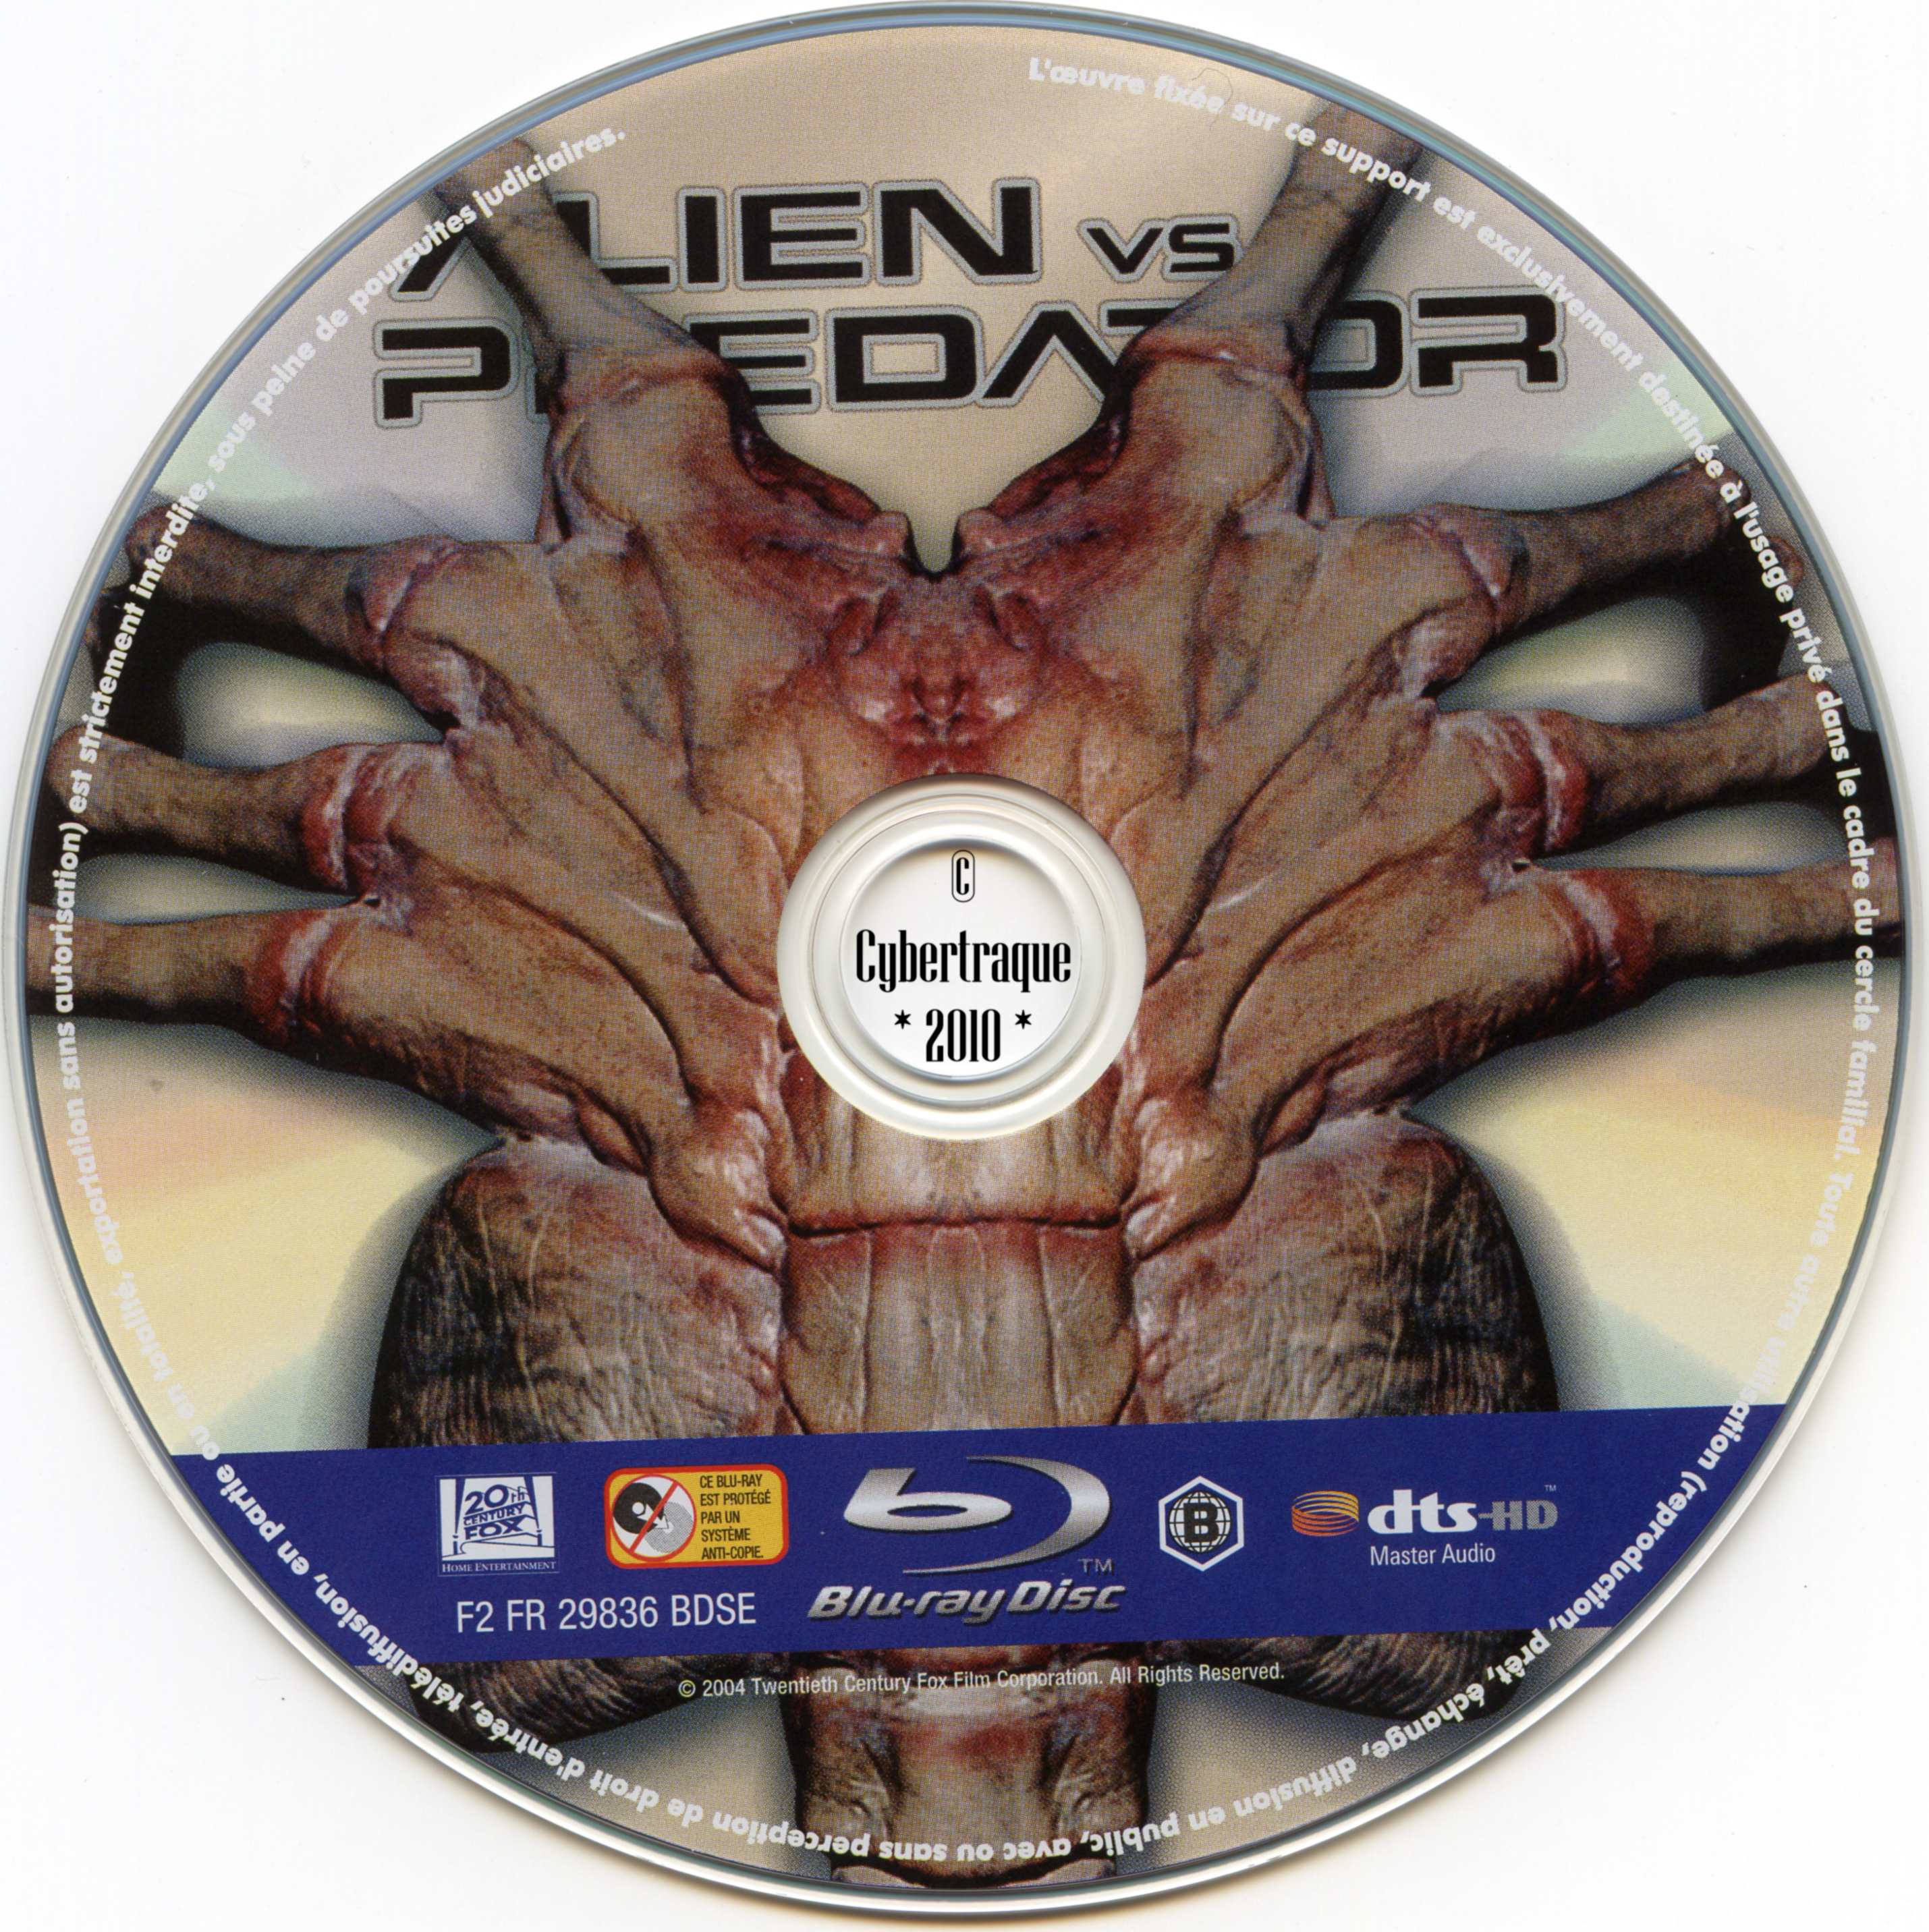 Alien vs predator (BLU-RAY)